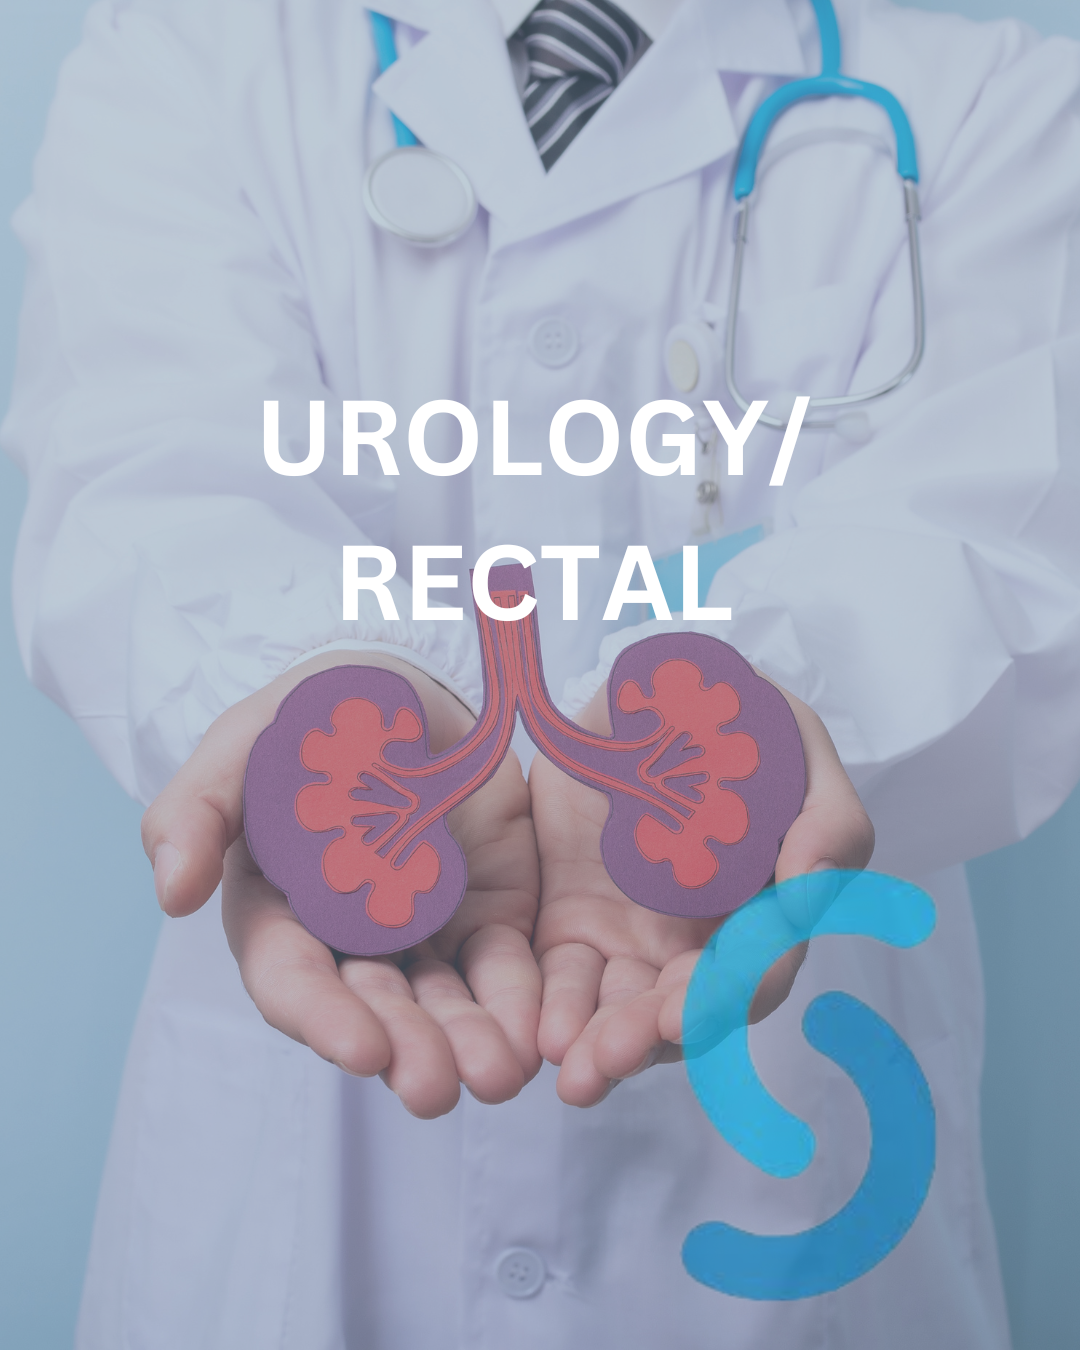 Urology / Rectal